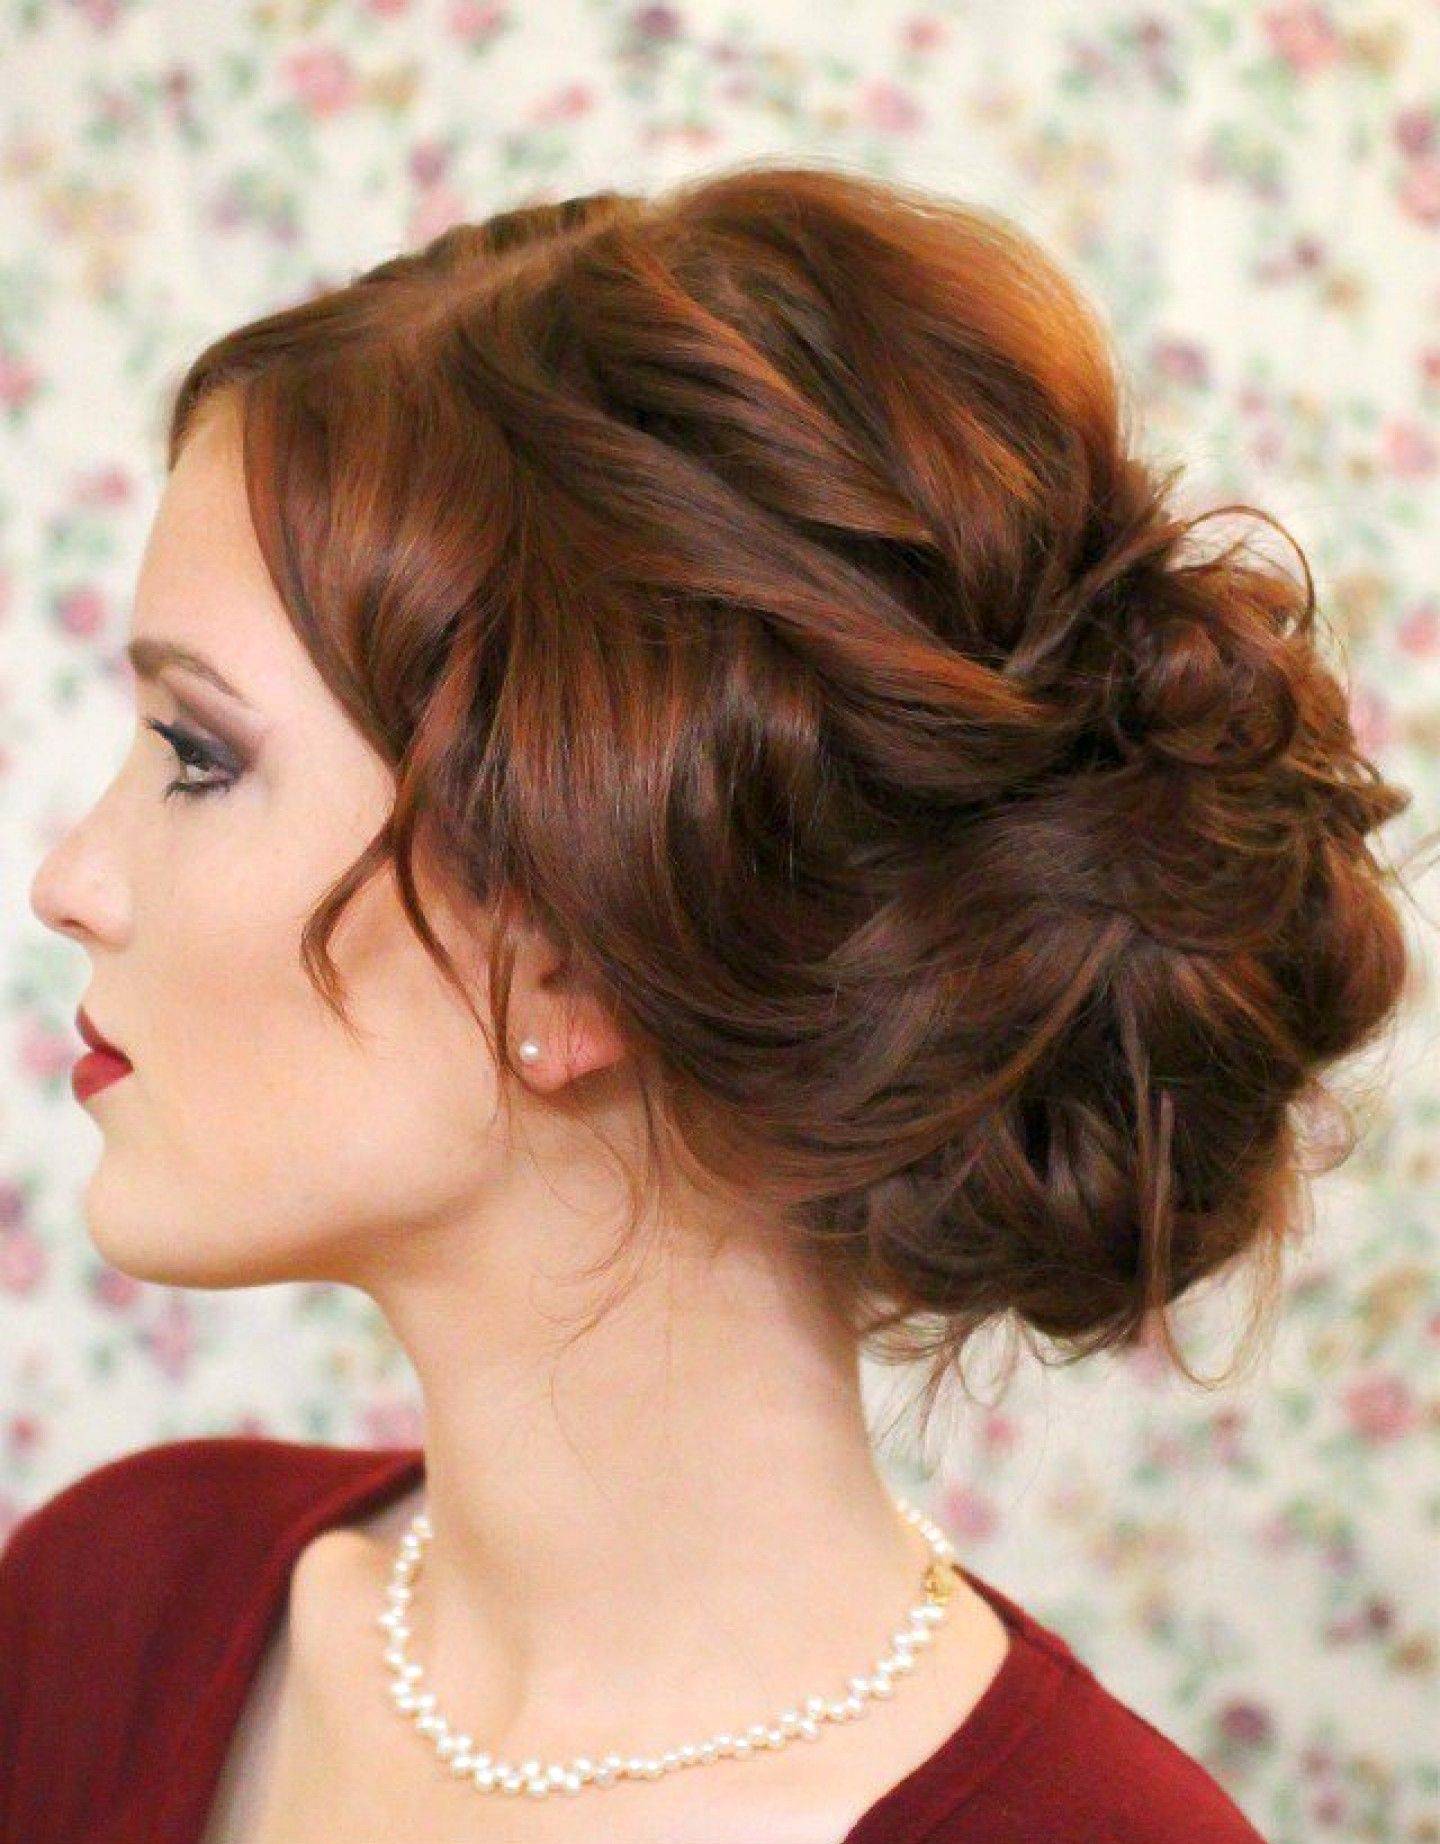 10 женских причёсок для коротких волос на каждый день - фото красивых причесок на короткие волосы